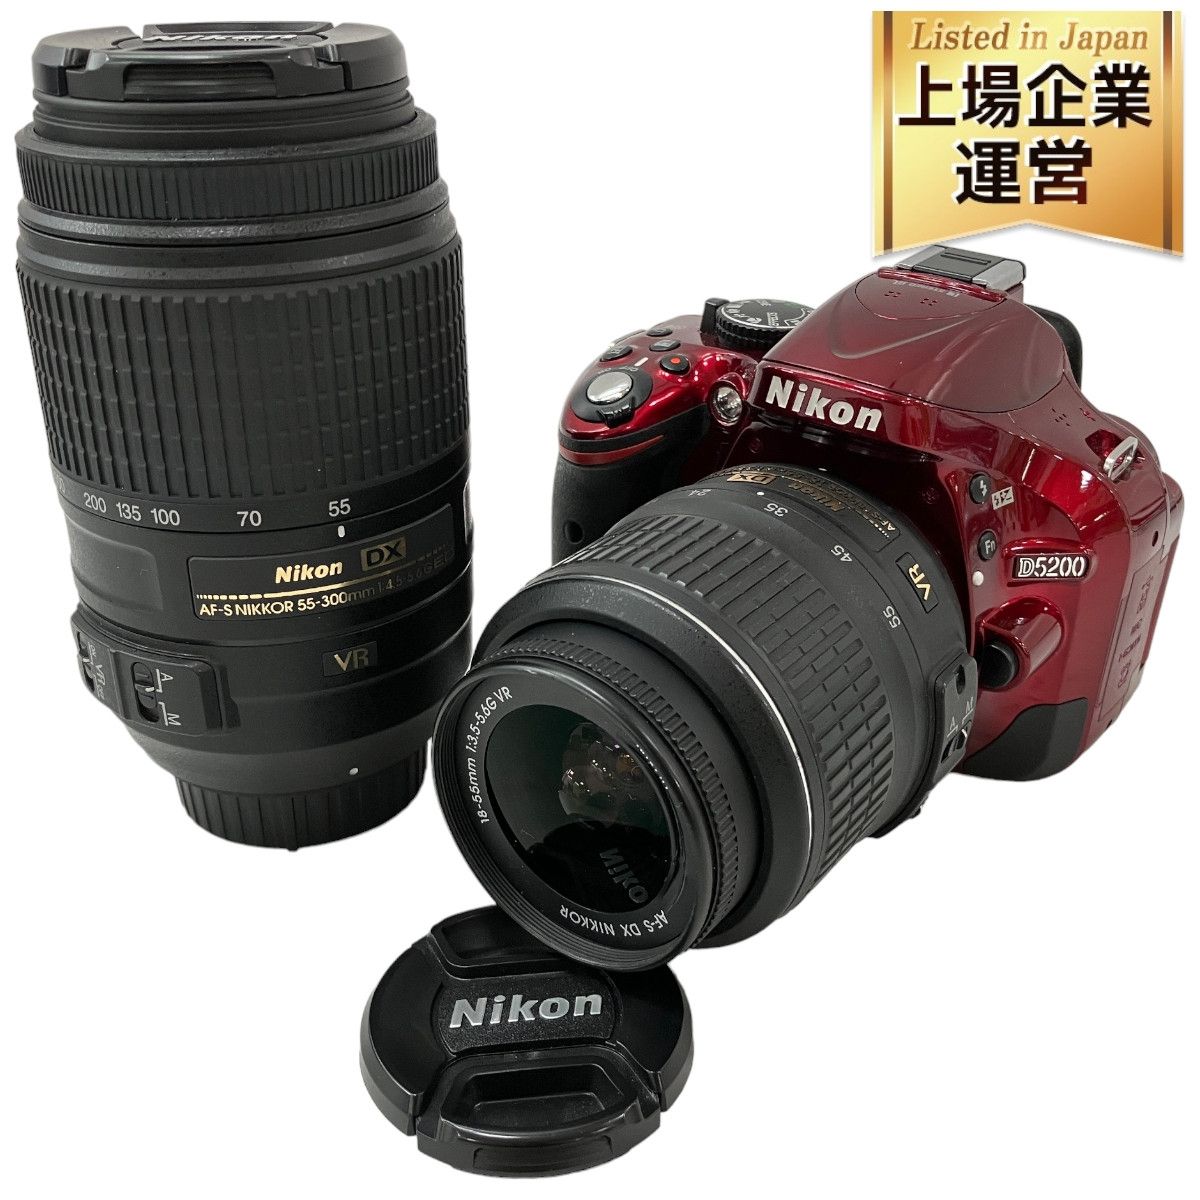 Nikon D5200 一眼レフ カメラ ダブルズームレンズキット 18-55mm 55-300mm レッド ニコン ジャンク H8696299 -  メルカリ